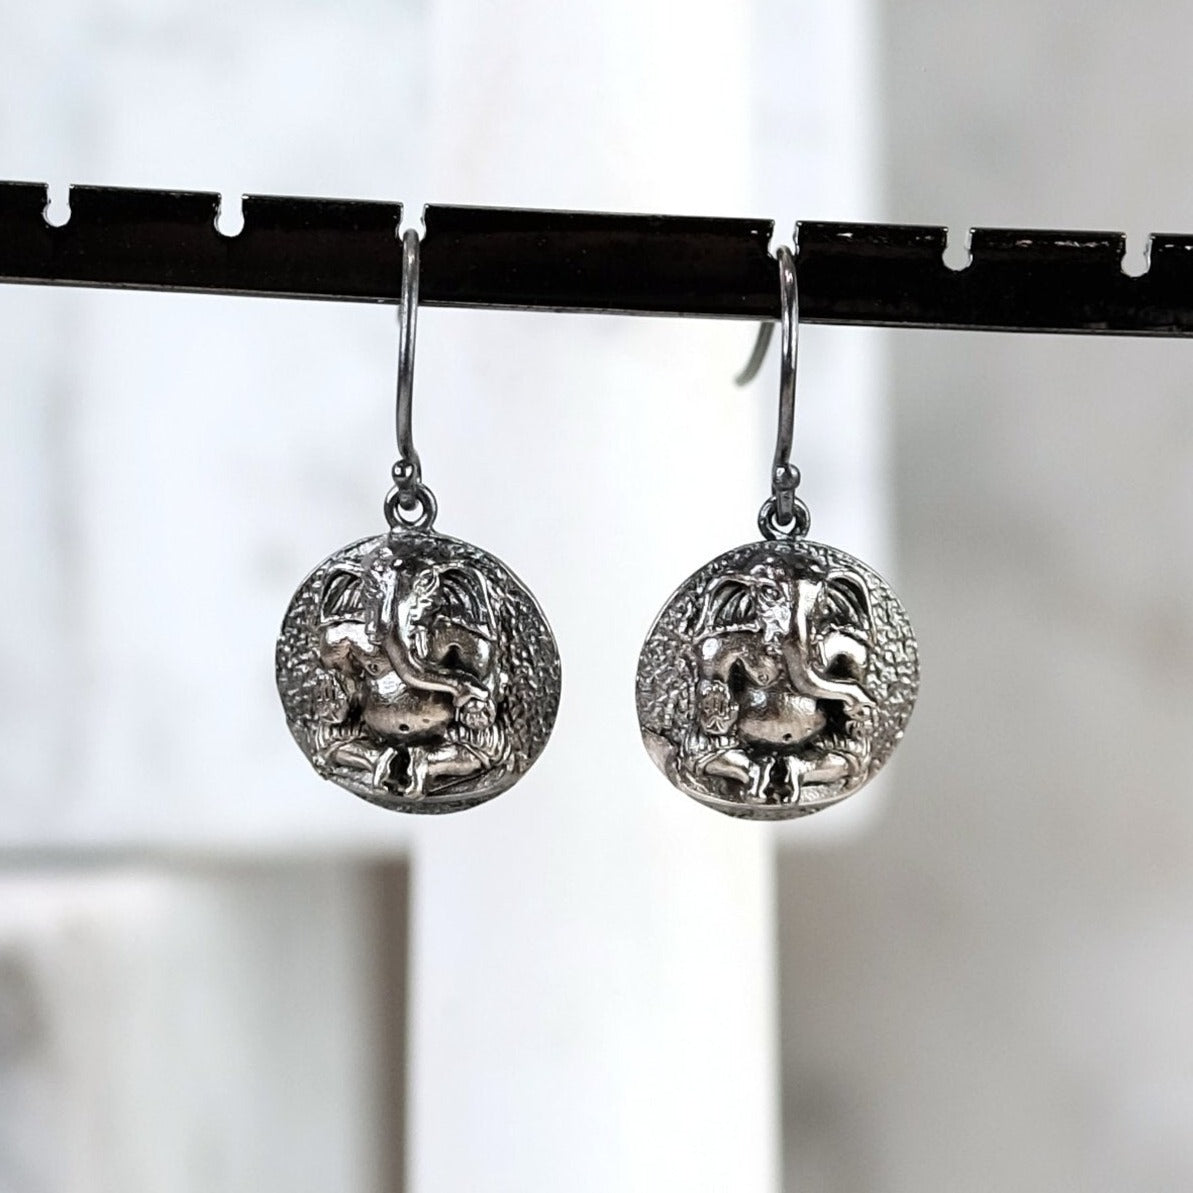 The Madstone Ganesha earrings